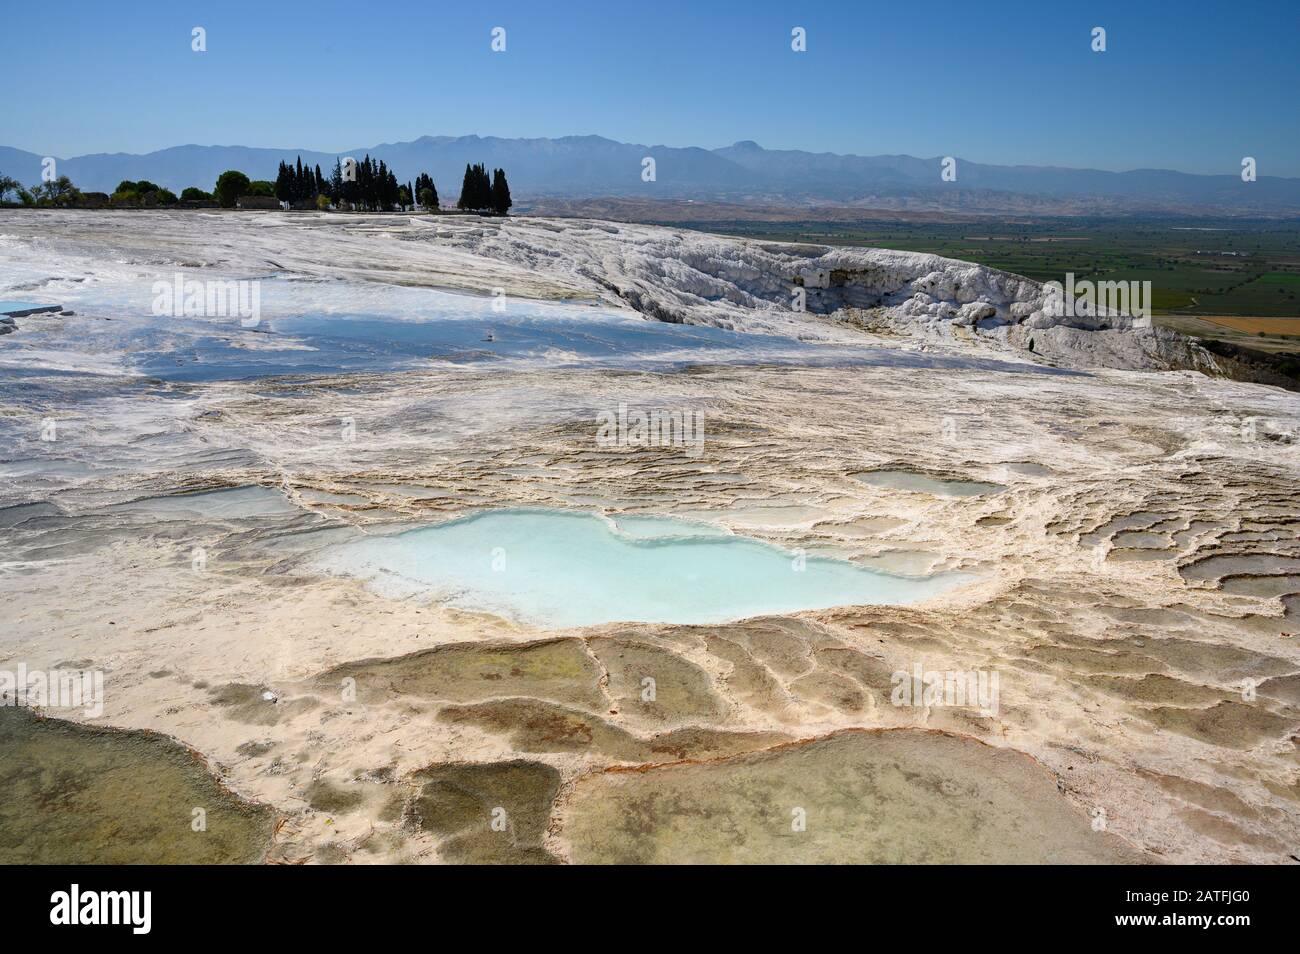 Aguas termales ricas en minerales que fluyen por terrazas travertinas en Pamukkale, Turquía Foto de stock